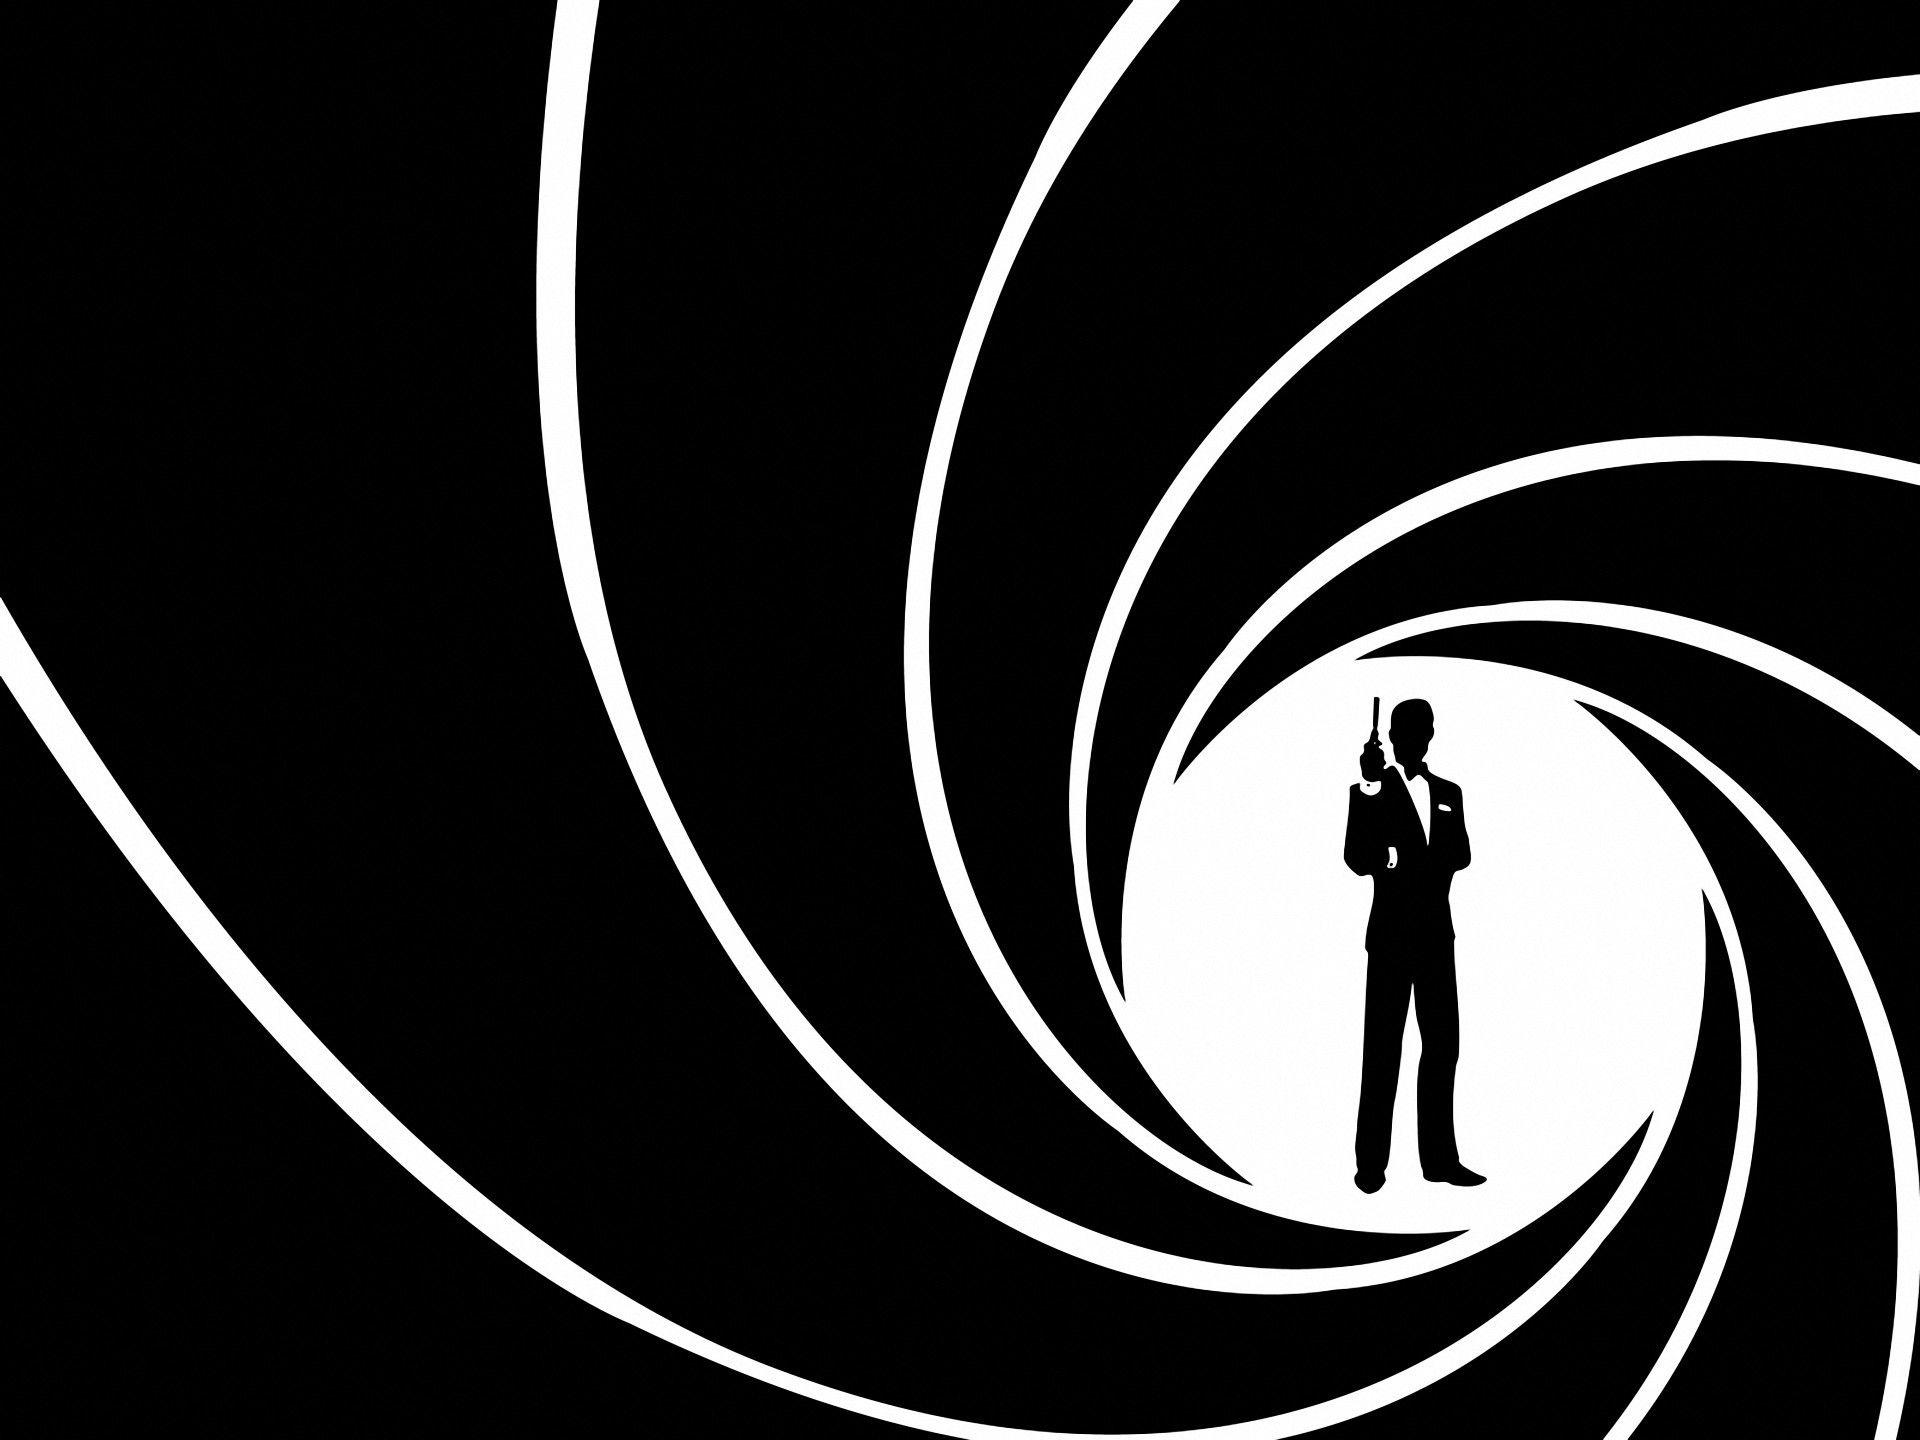 007 wallpapers - Tòan những hình nền 007 đẹp nhất đều có tại WallpaperAccess. Hãy khám phá và chiêm ngưỡng những hình ảnh đặc sắc của đặc vụ điển trai này. Từ cảnh quay mạo hiểm đến những khoảnh khắc lãng mạn, bạn sẽ chắc chắn tìm thấy bức hình nền hoàn hảo cho màn hình của mình.